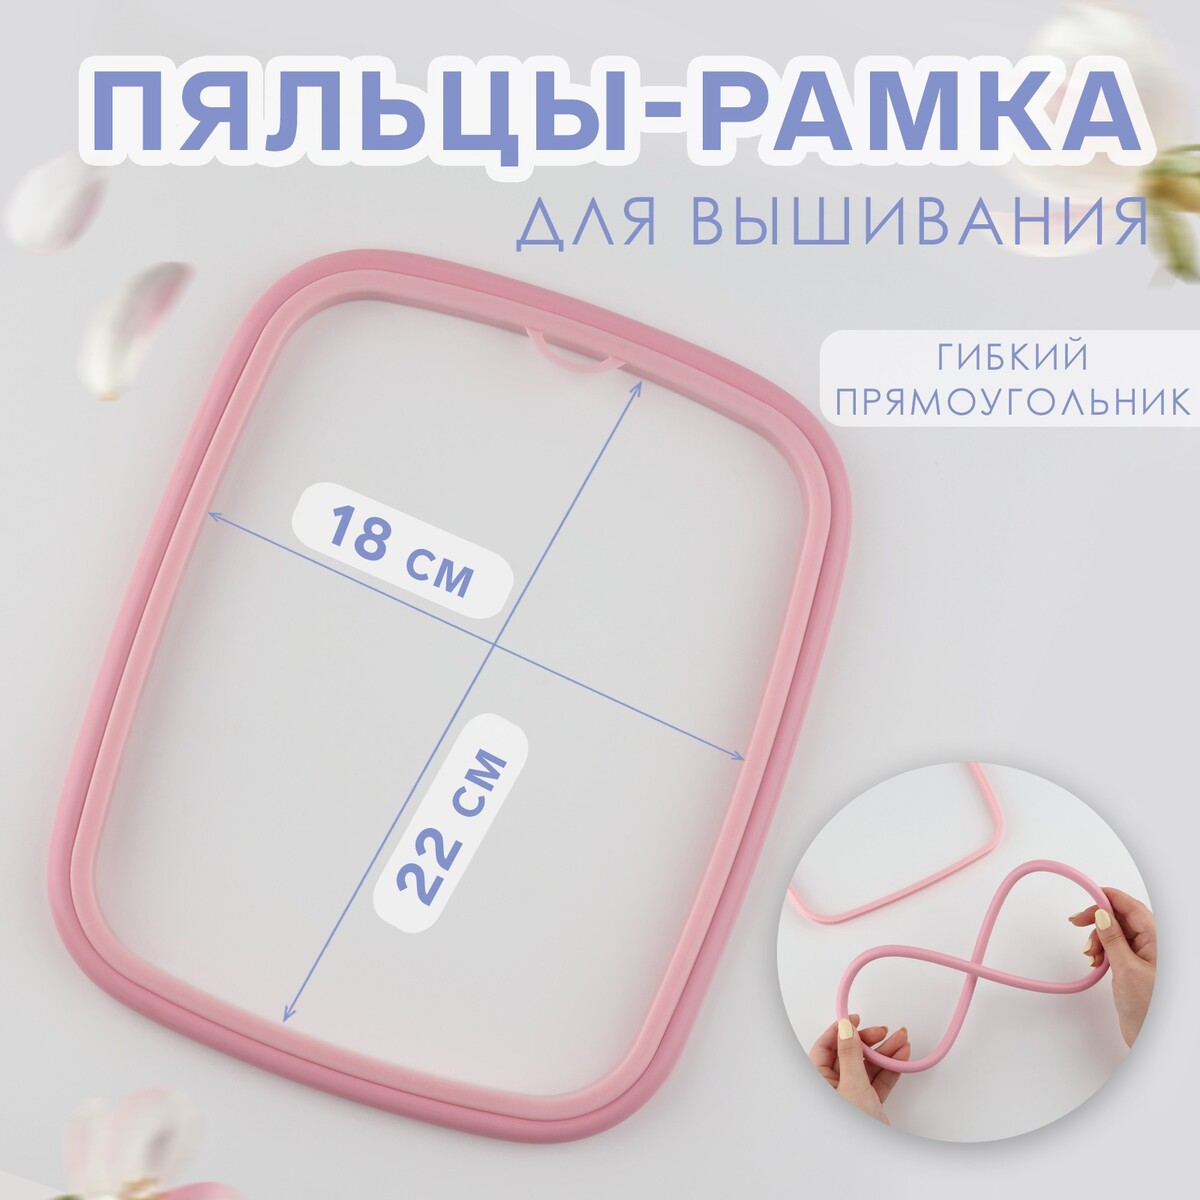 Пяльцы для вышивания, гибкий прямоугольник, 22 × 18 см, цвет розовый